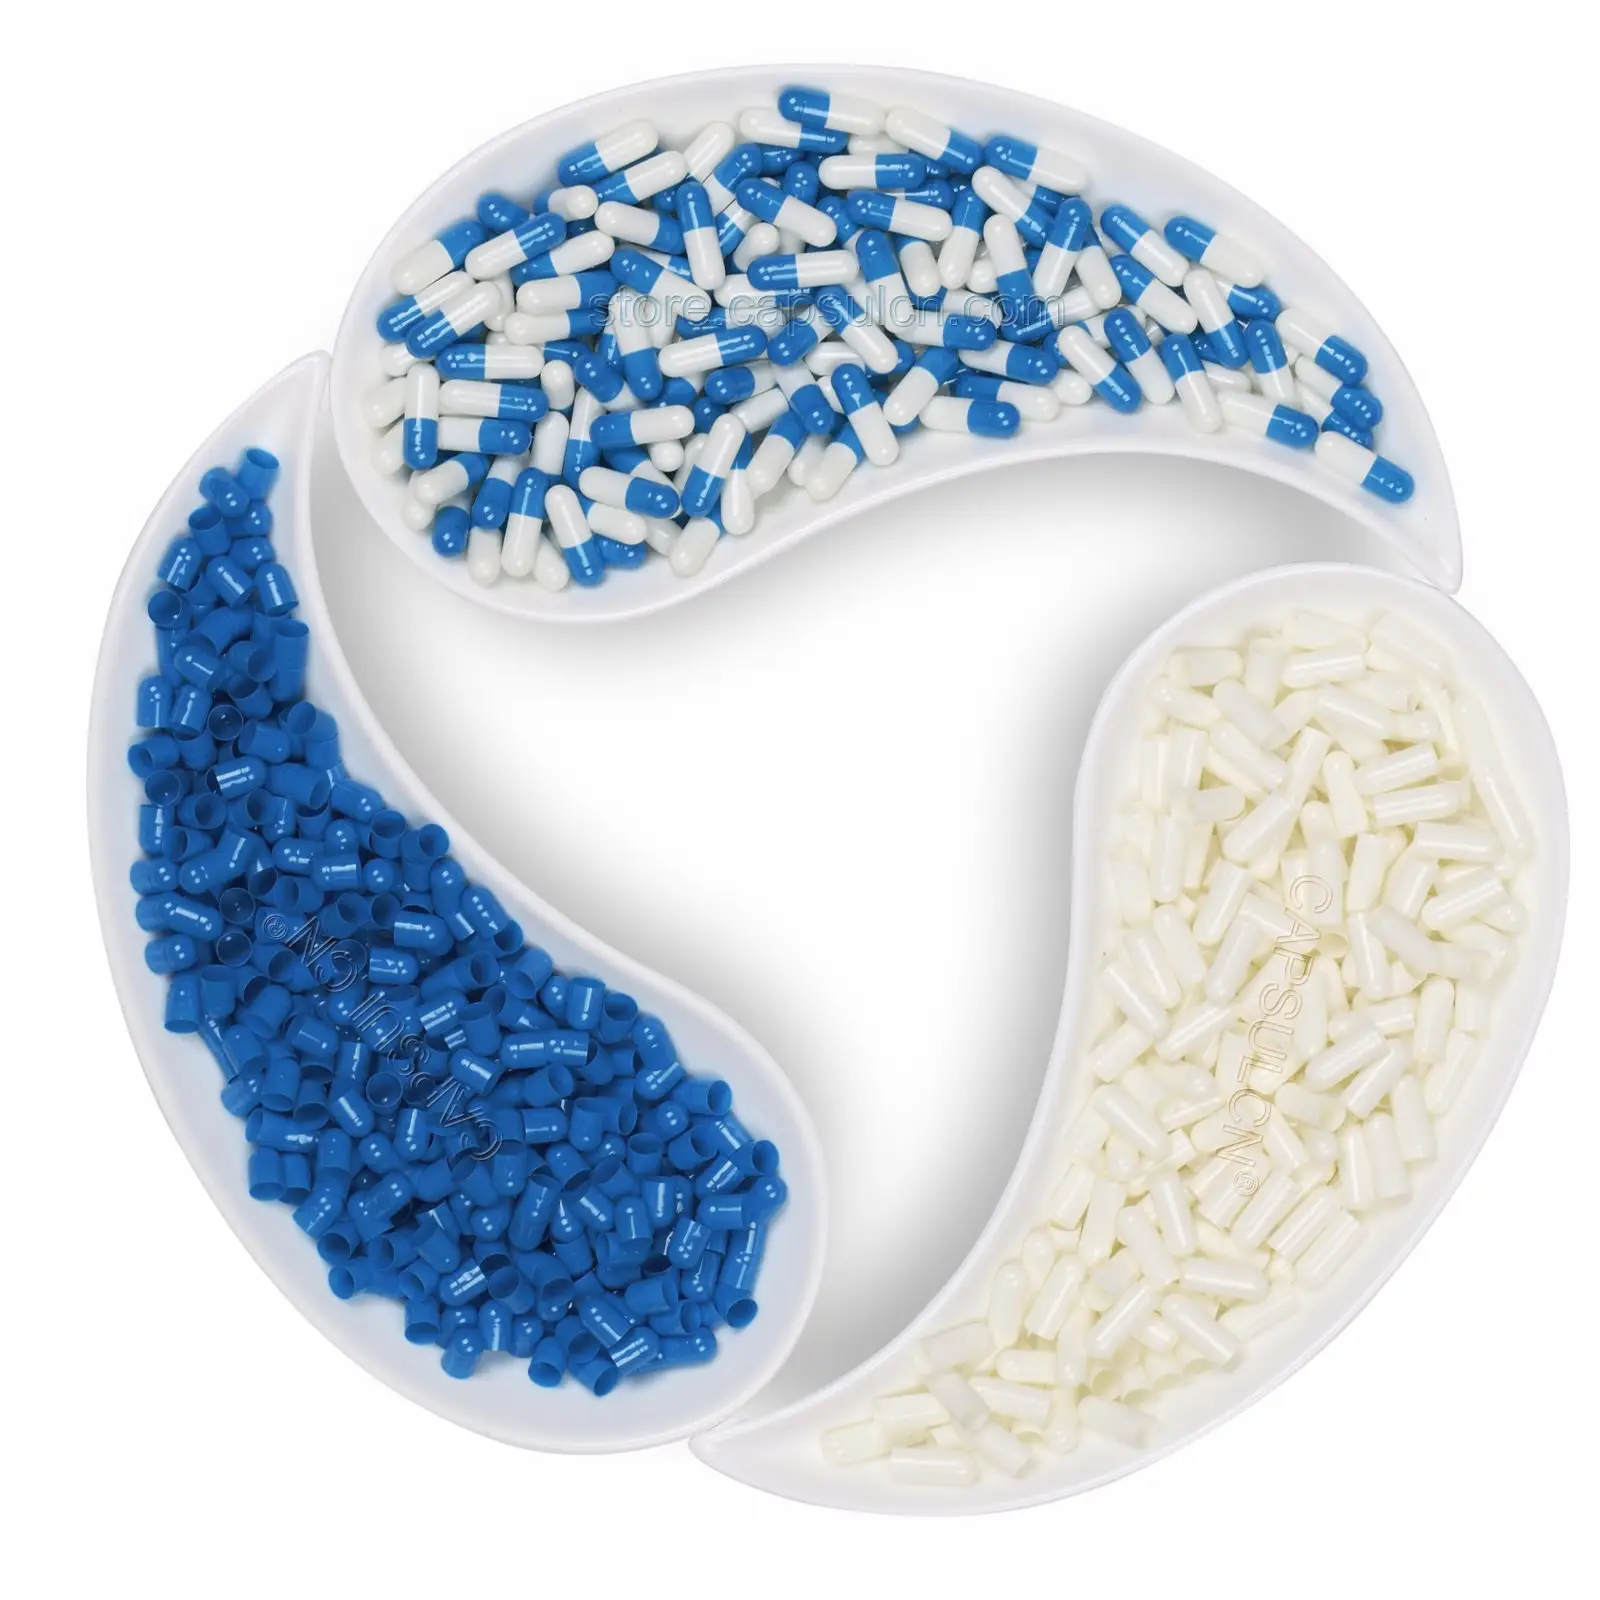 CapsulCN taglia 00 0 1 2 3 4 capsule di gelatina dura vuota blu e bianca all'ingrosso